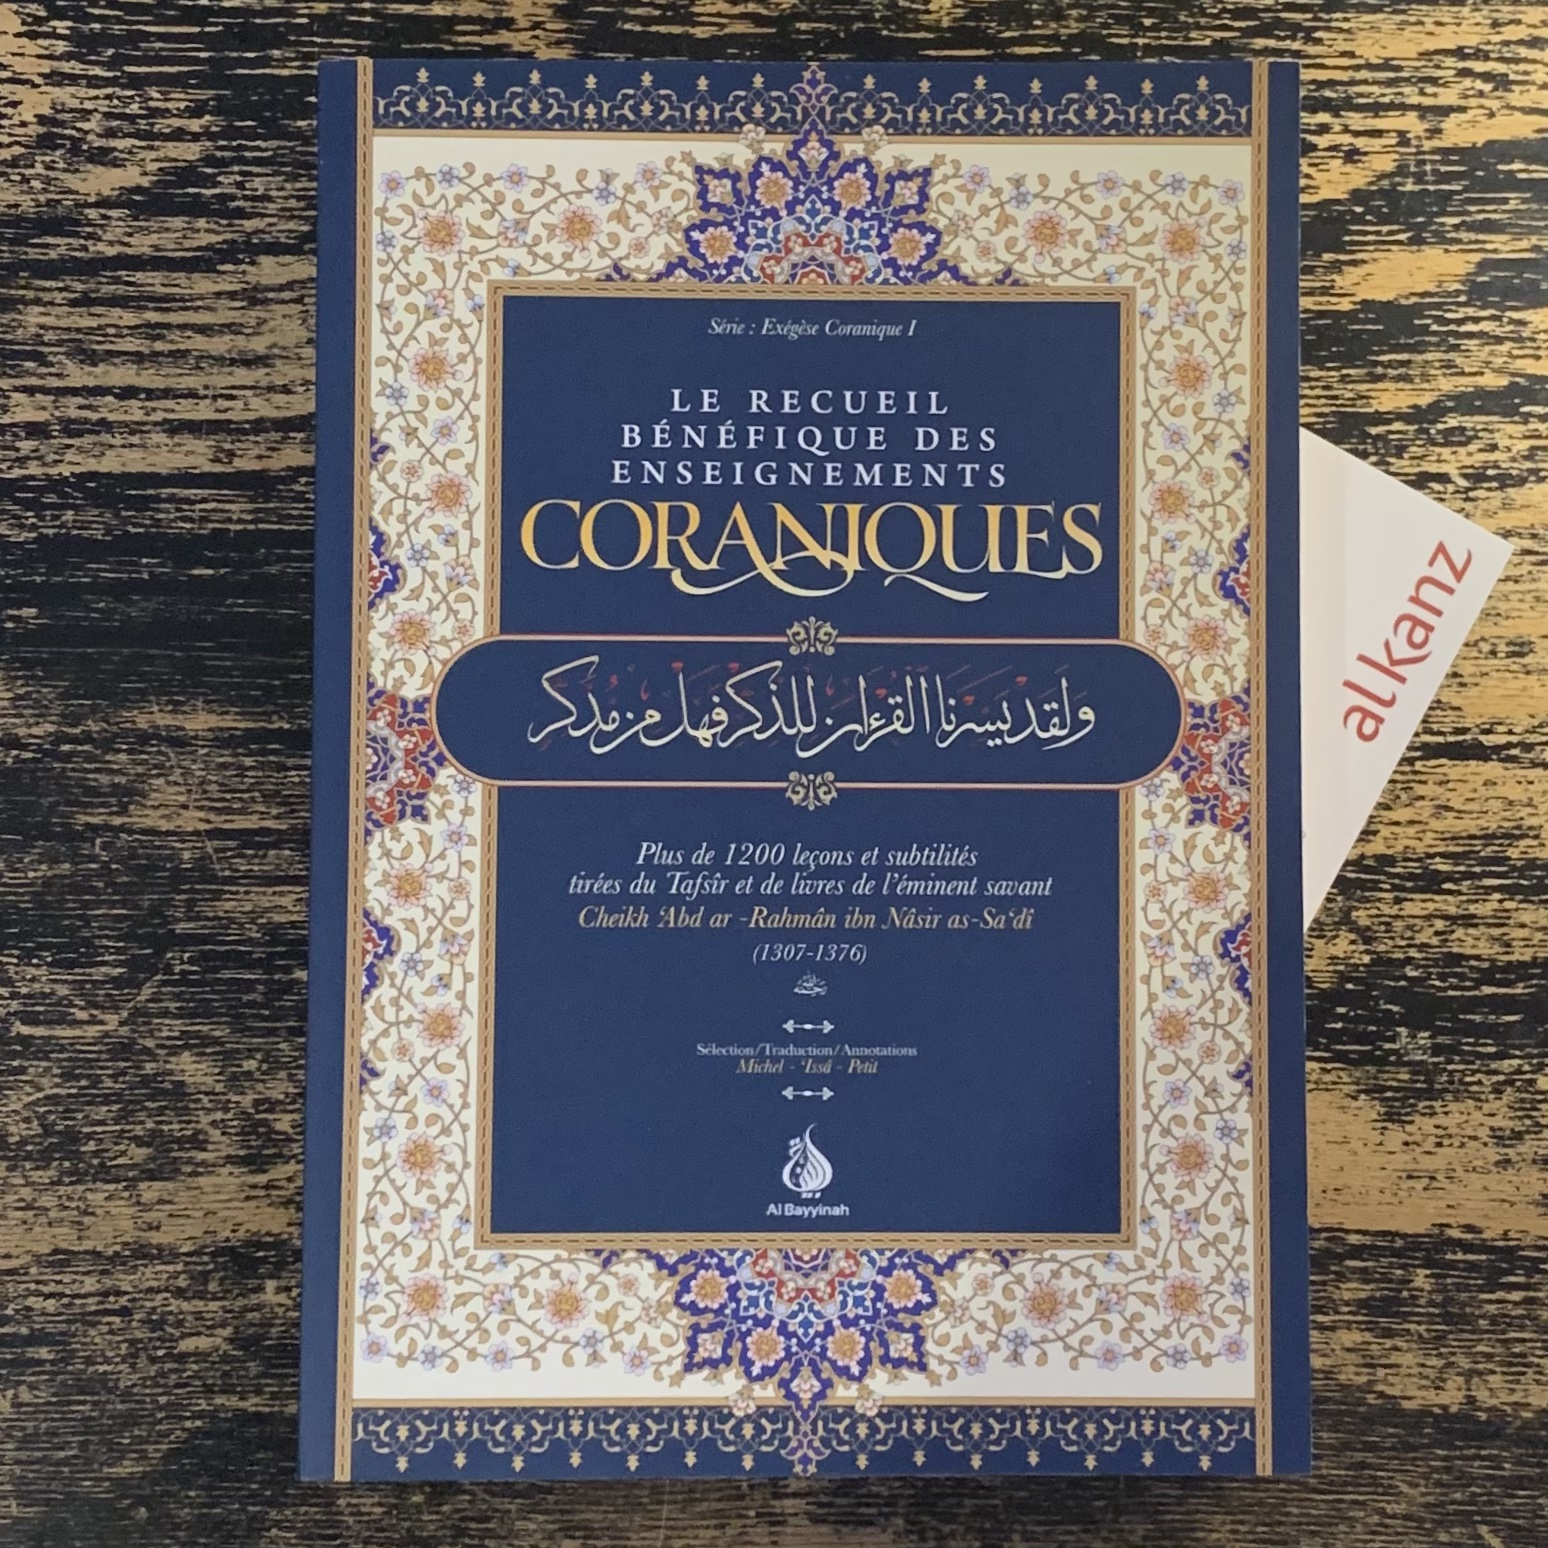 Le recueil bénéfique des enseignements coraniques - Ibn Sa'di - éditions Al Bayyinah